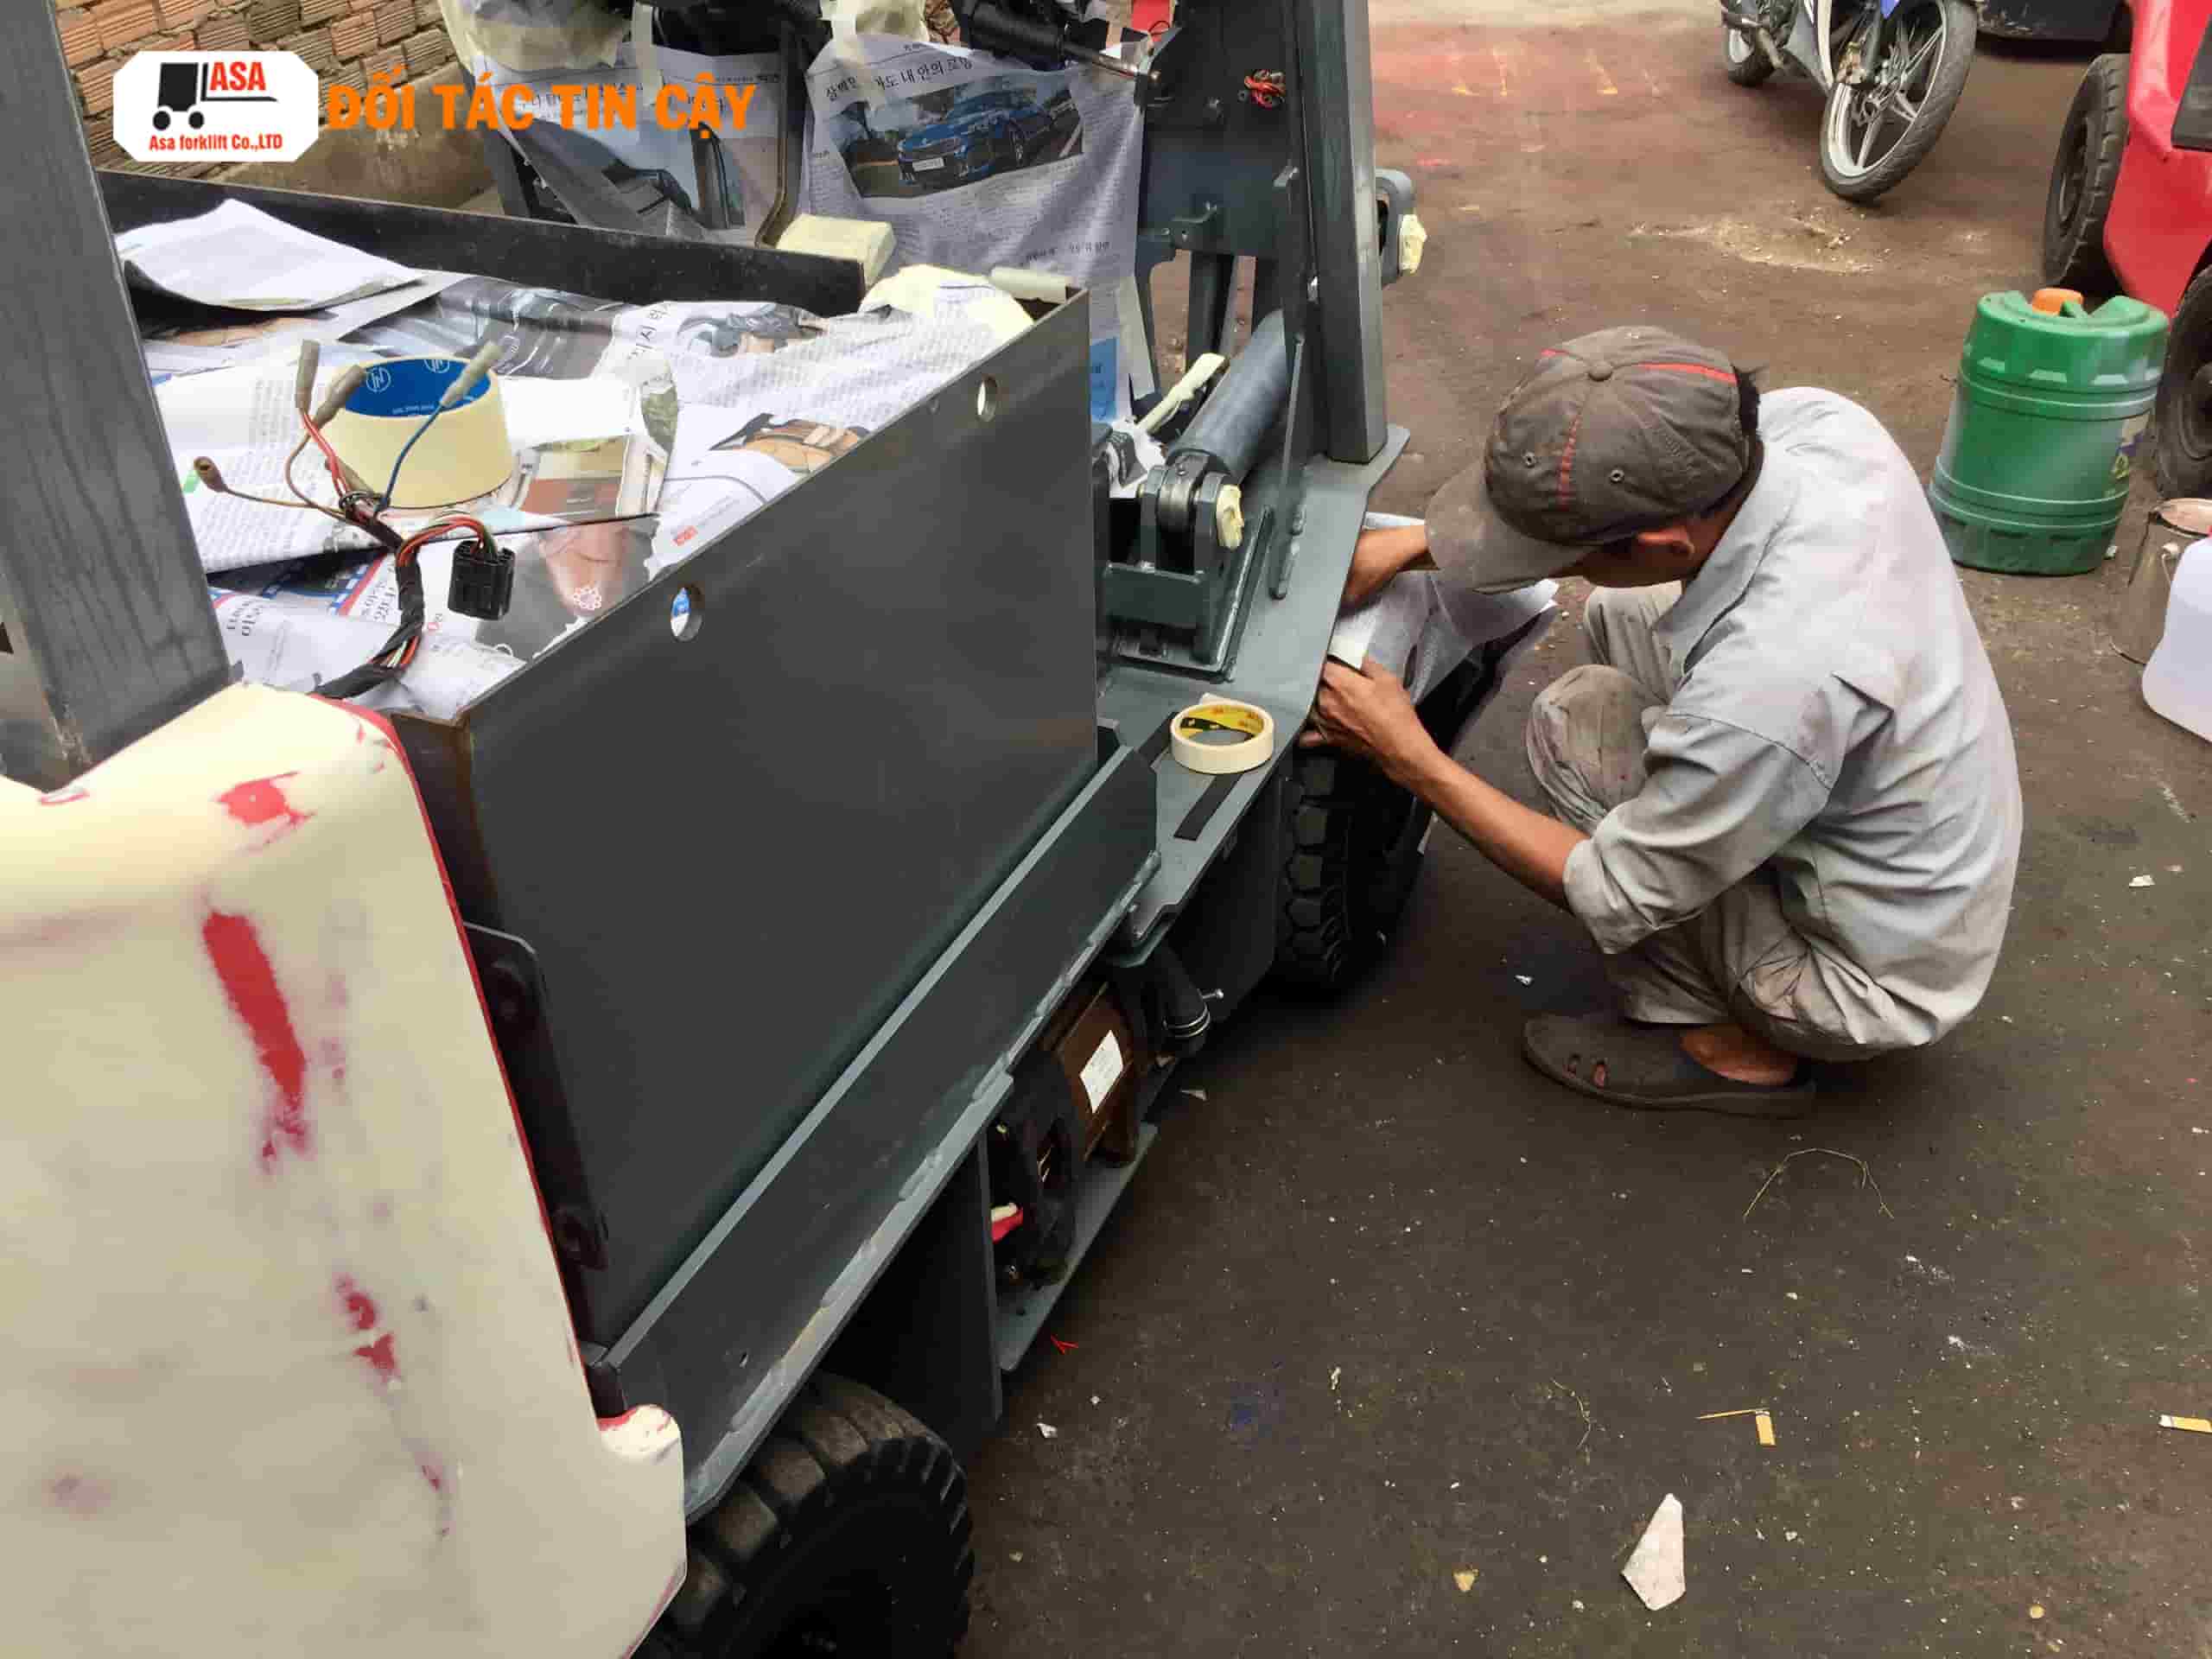 Khi sửa chữa xe nâng nếu khách có nhu cầu Asa sẽ sơn lại lớp sơn mới cho xe nâng